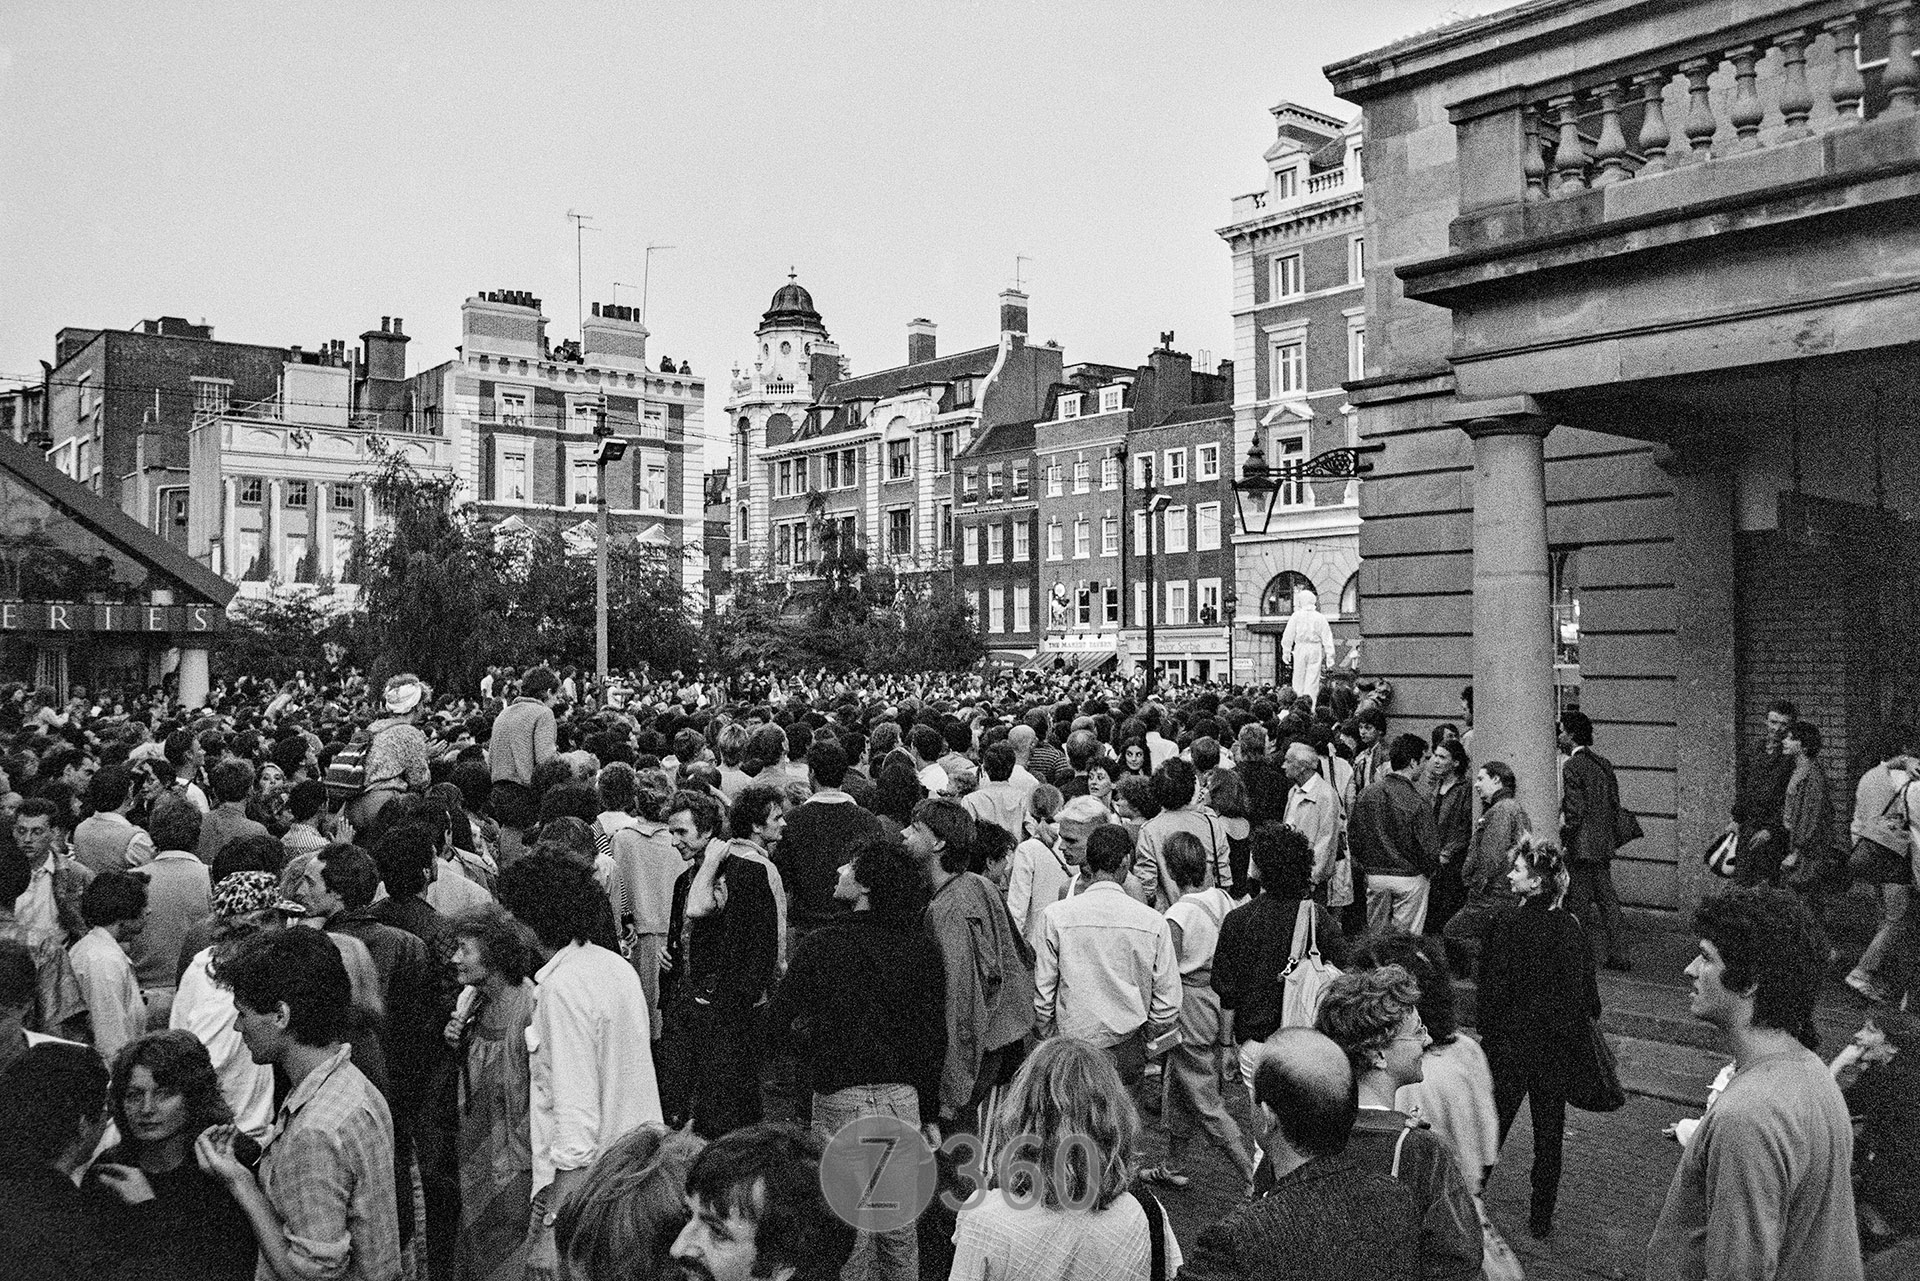 Urban Sax, Covent Garden November 1983